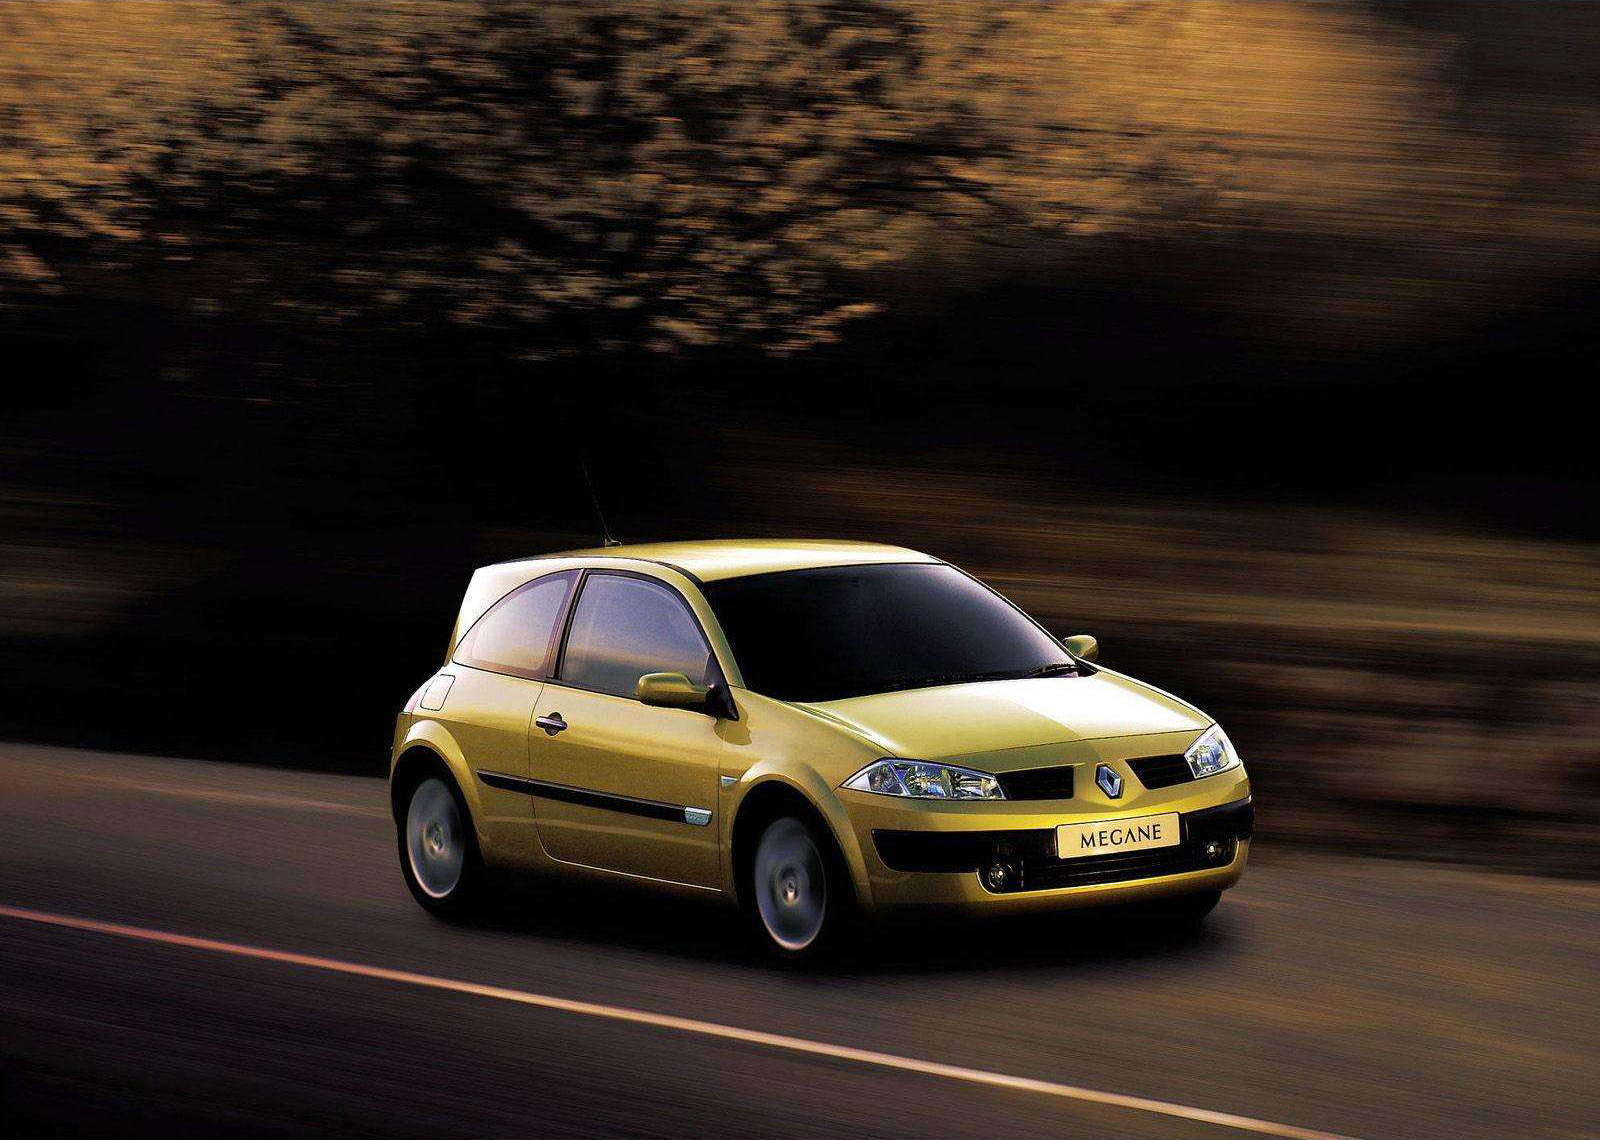 maatschappij communicatie Scenario 2003 Renault Megane II Sport Hatch - HD Pictures @ carsinvasion.com